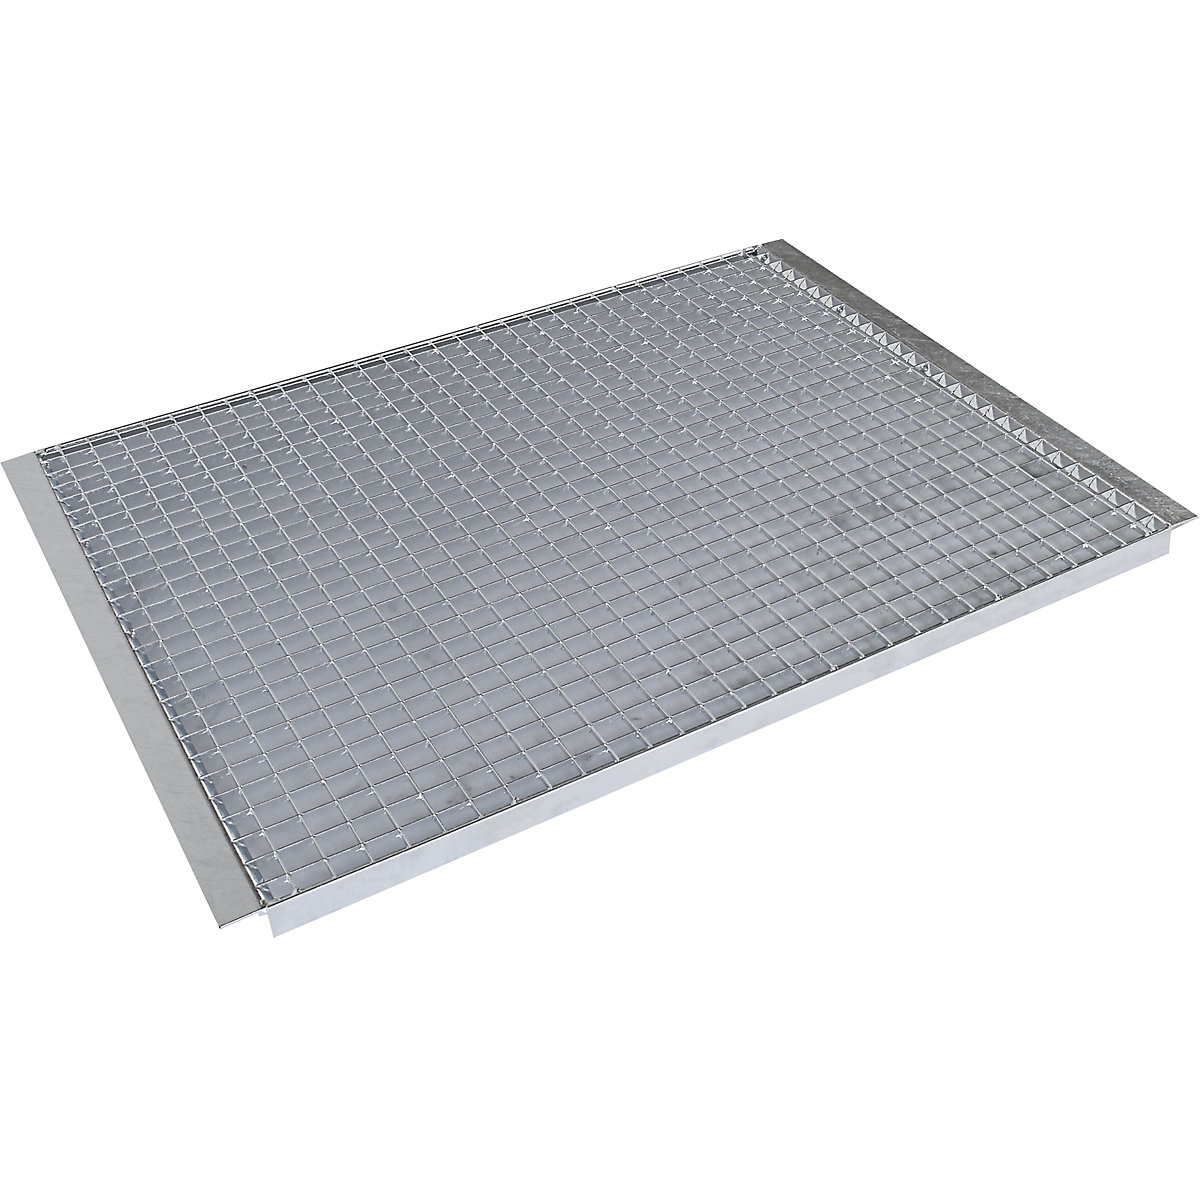 Shelf for pallet shelf unit – eurokraft pro, mesh shelf, for beam length 1825 mm, shelf unit depth 750 mm